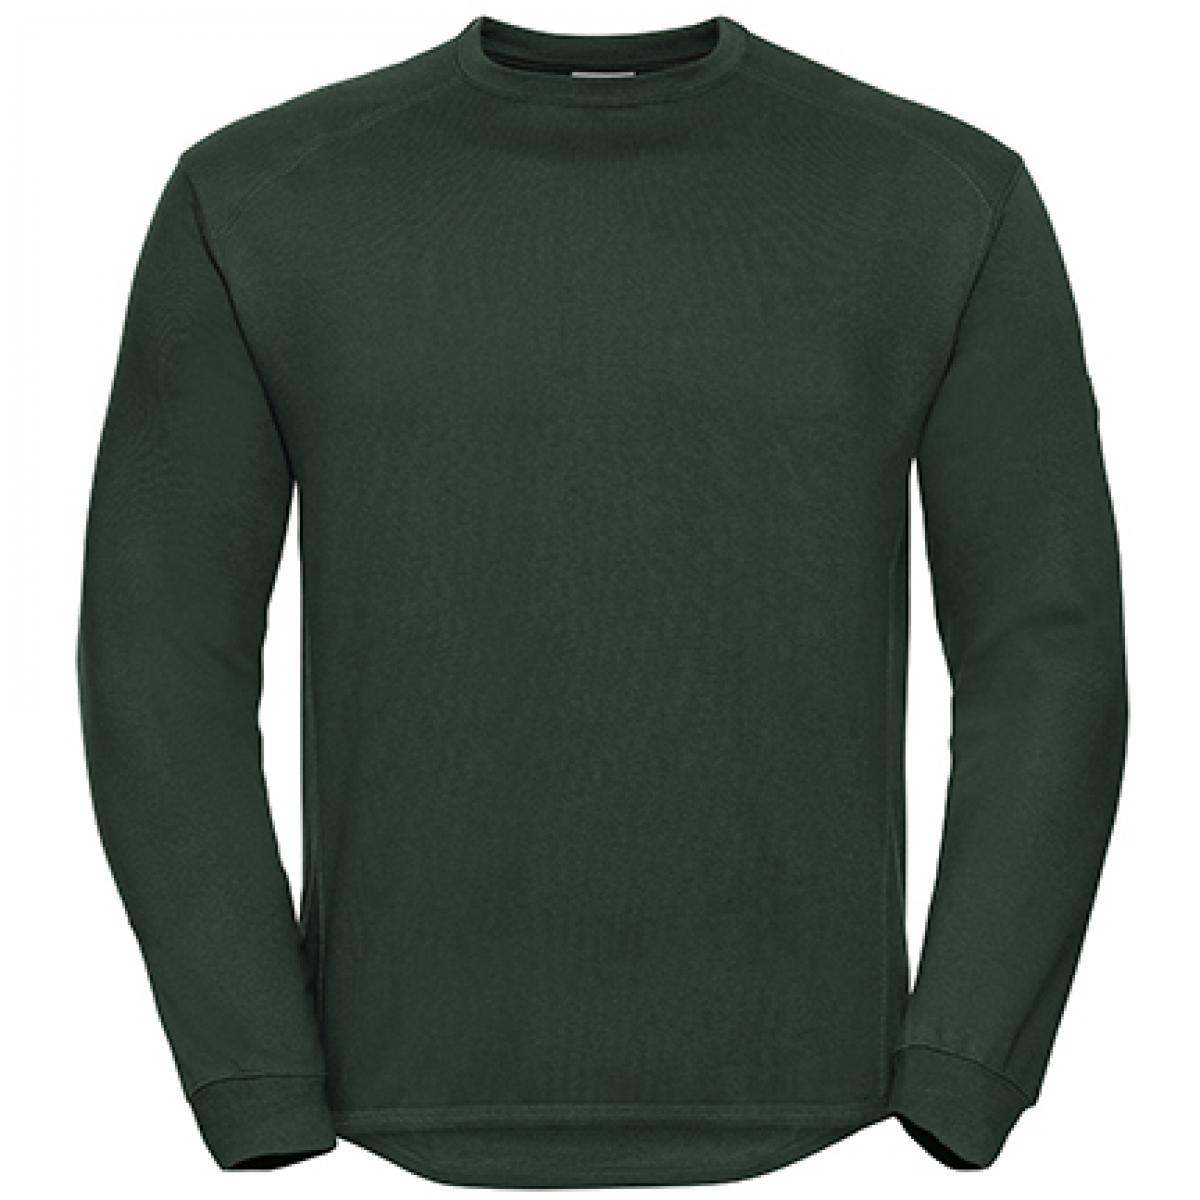 Hersteller: Russell Herstellernummer: R-013M-0 Artikelbezeichnung: Workwear-Sweatshirt / Pullover Farbe: Bottle Green